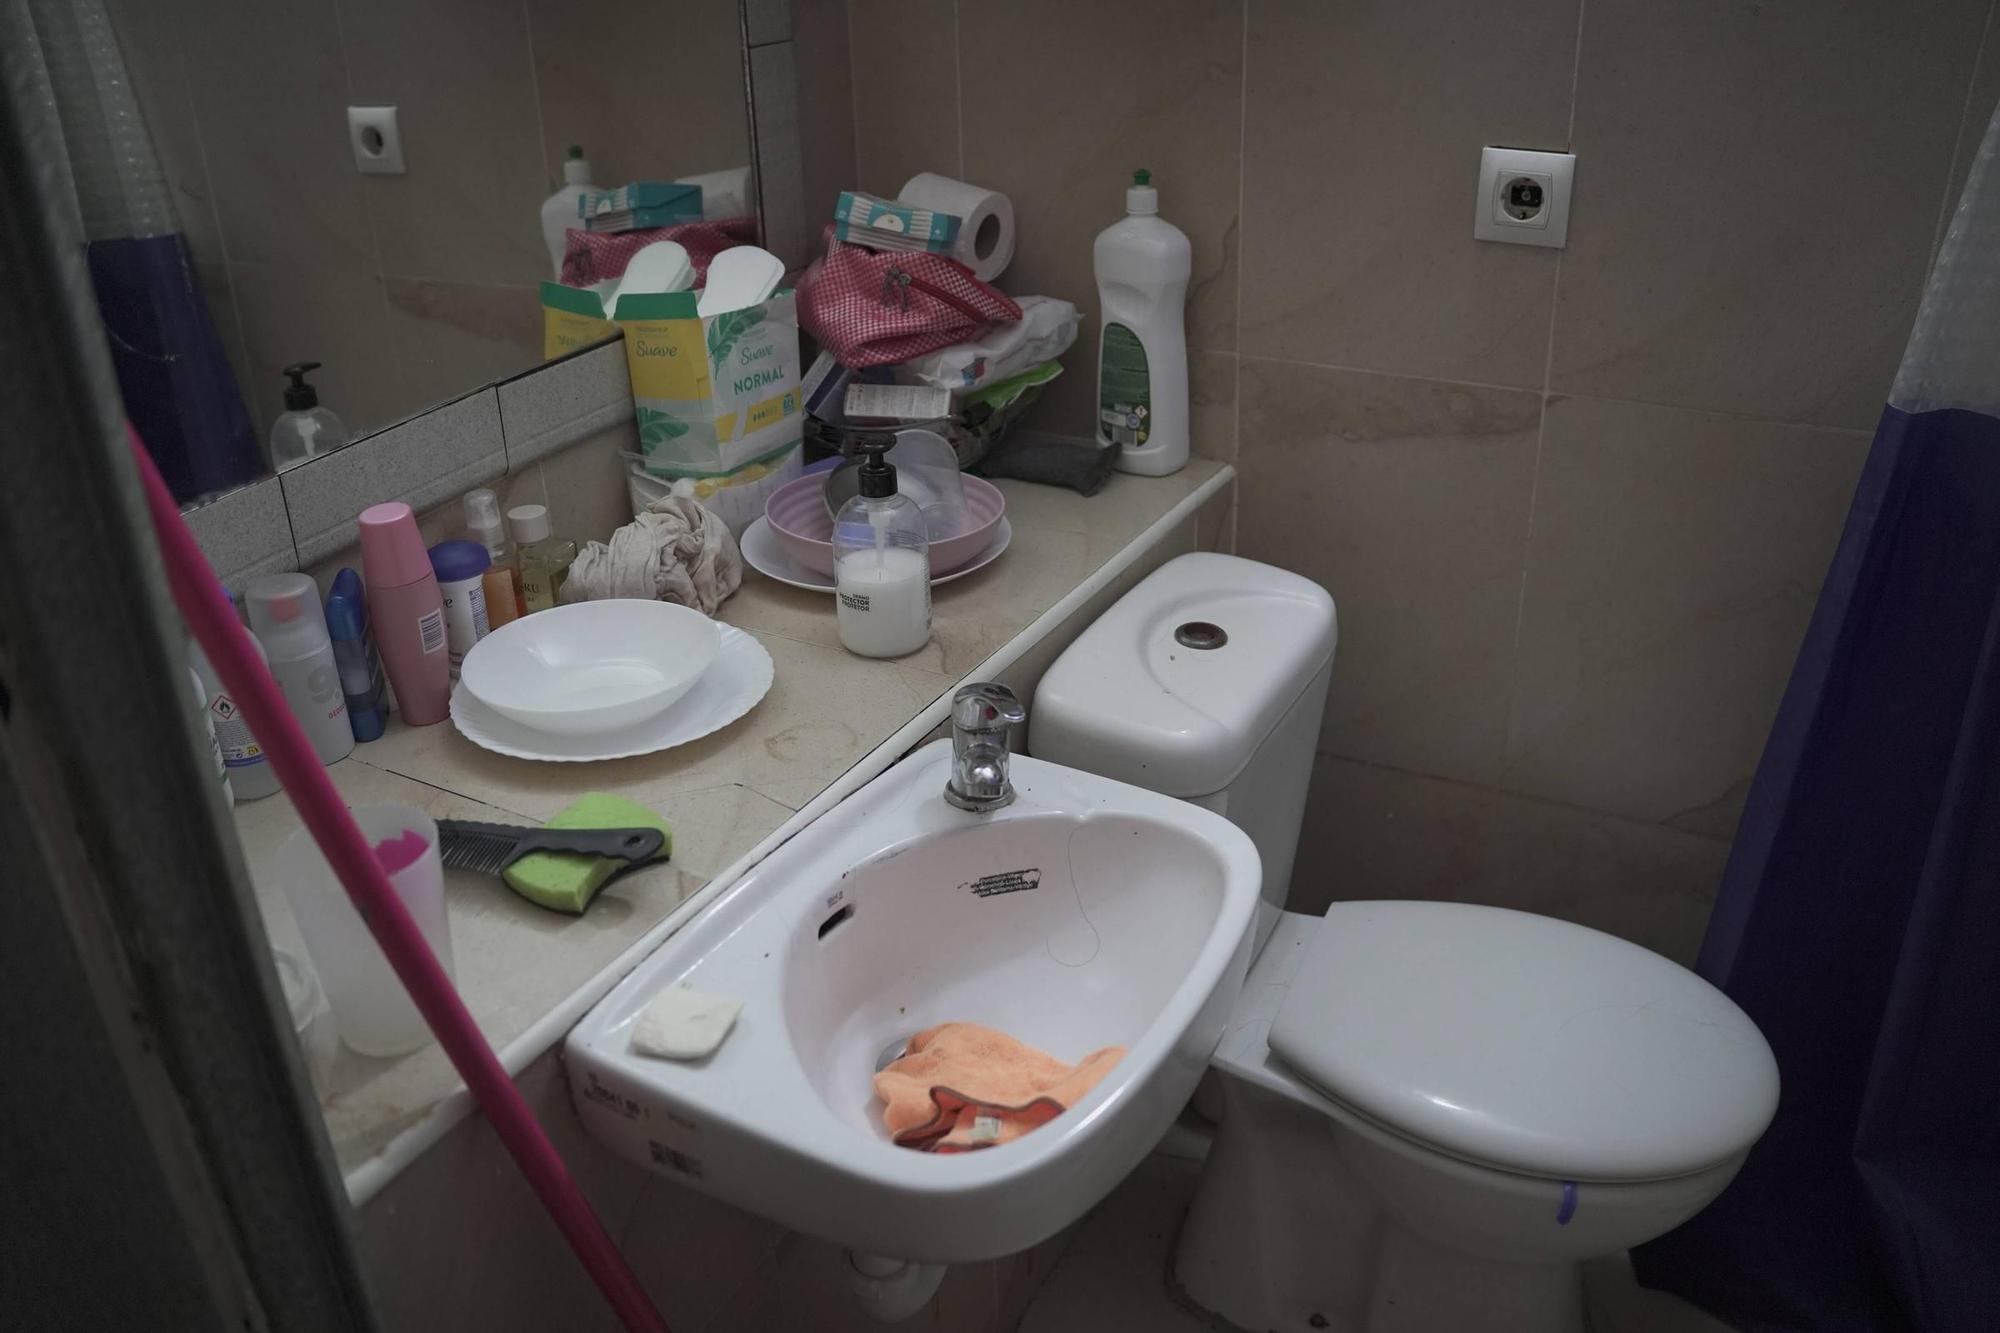 So sieht es in Mallorcas schlimmster Wohnung aus